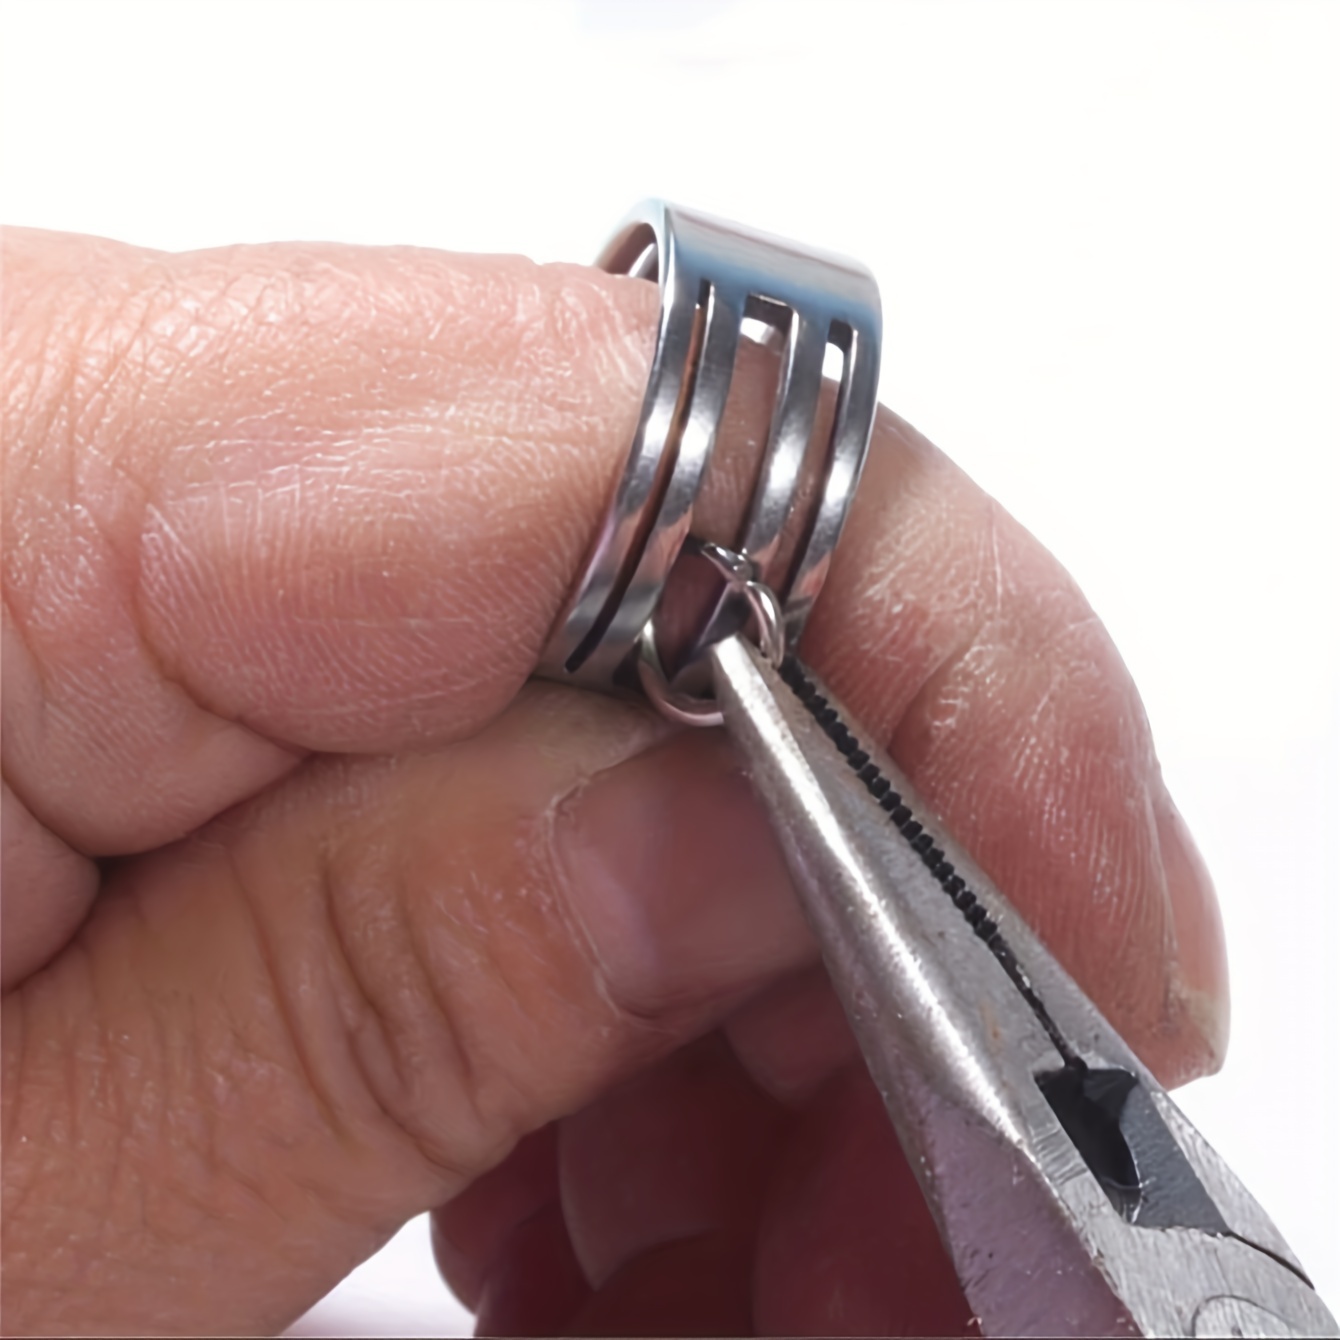  Medidores de joyería Medidor de anillos de hierro inoxidable  Herramienta de medición de tamaño de anillo de dedo Juego de calibrador de  anillos Modelos circulares con cinturón de medición de anillo